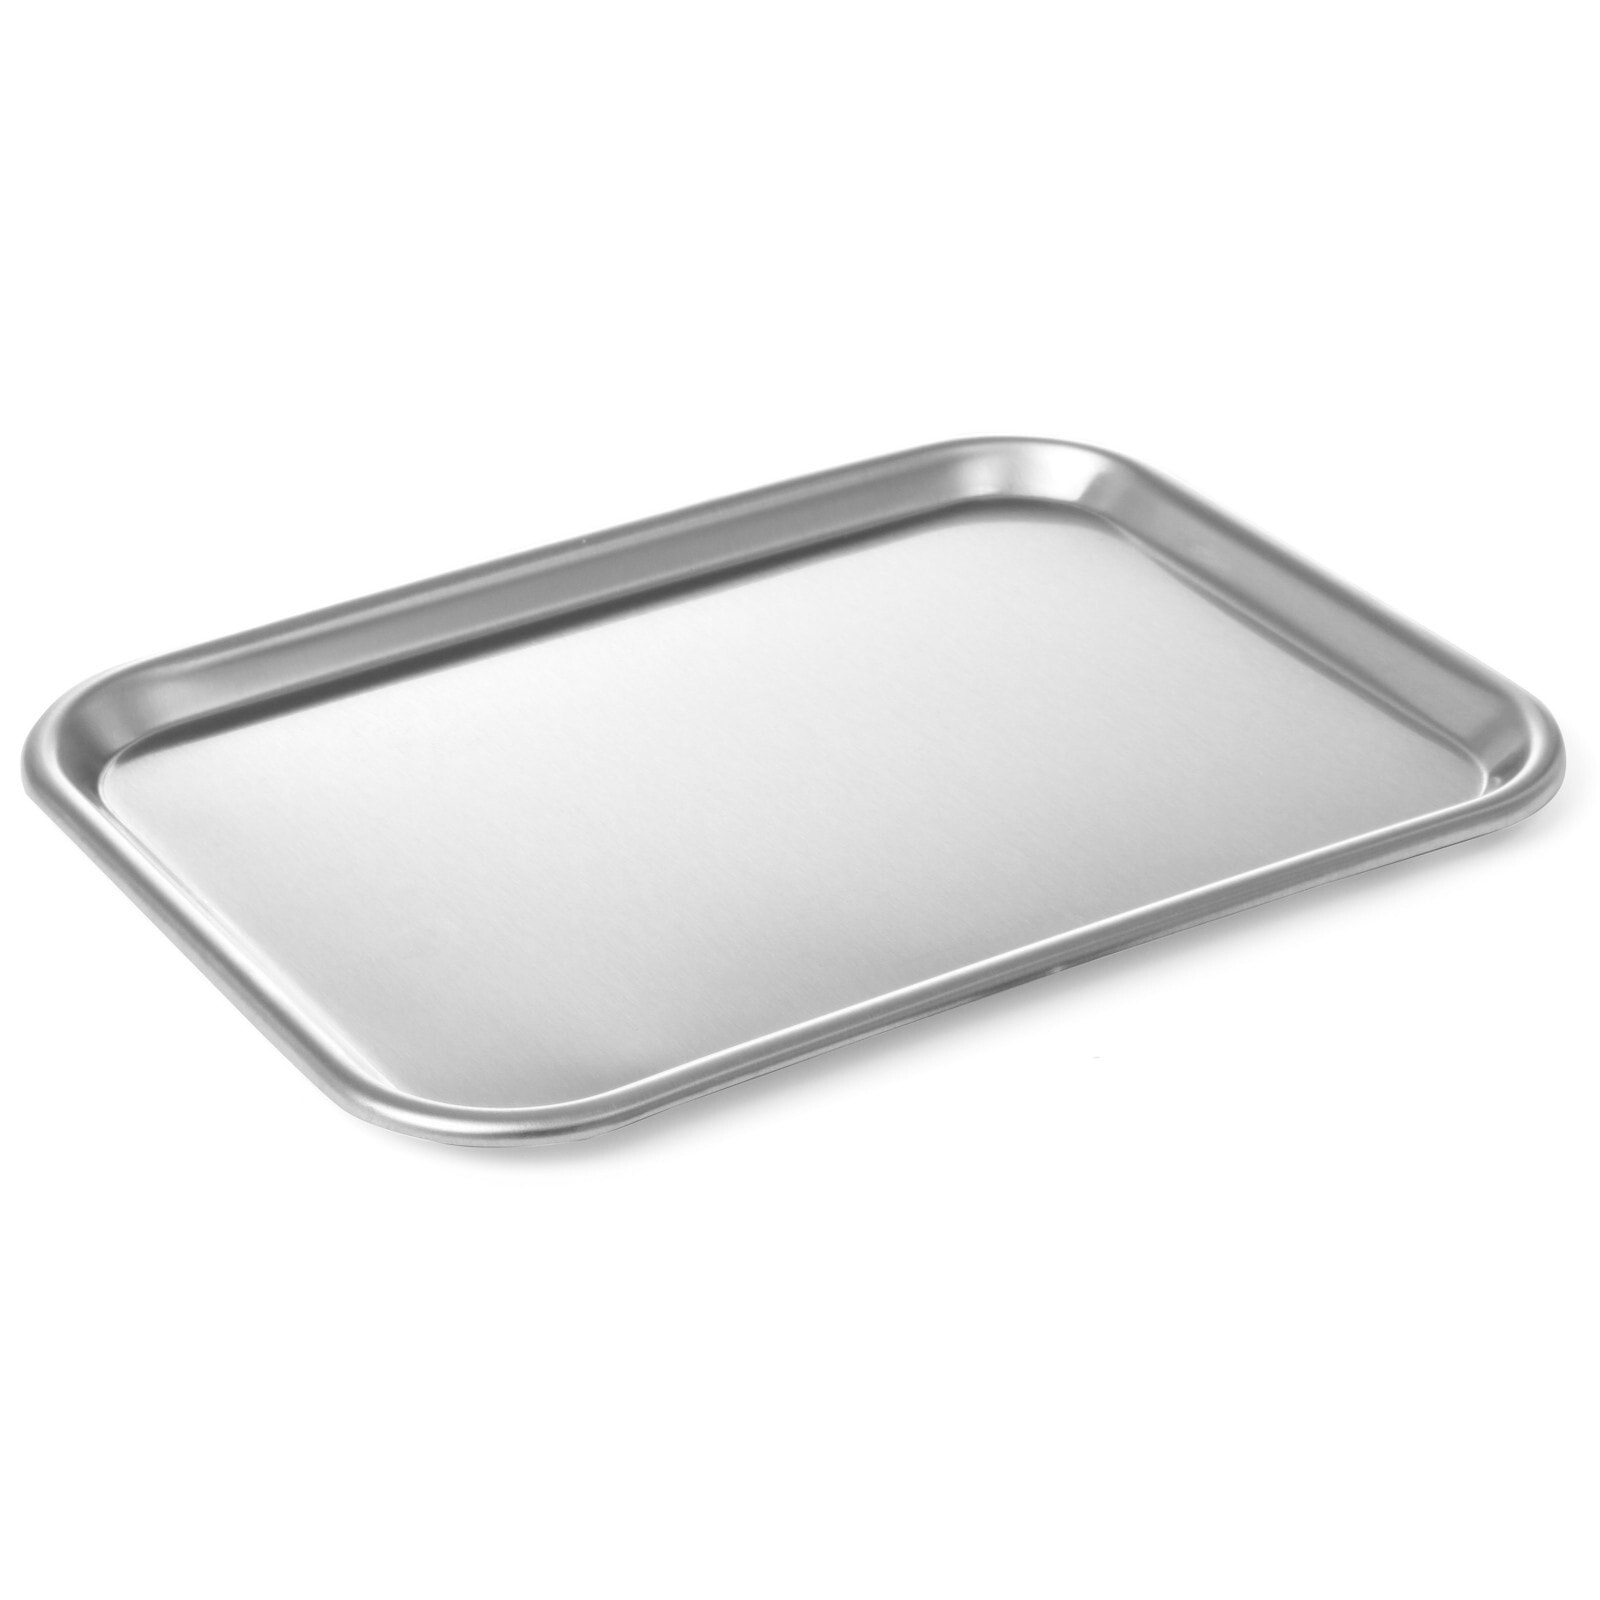 Steel food display display tray 310x230mm - Hendi 408308